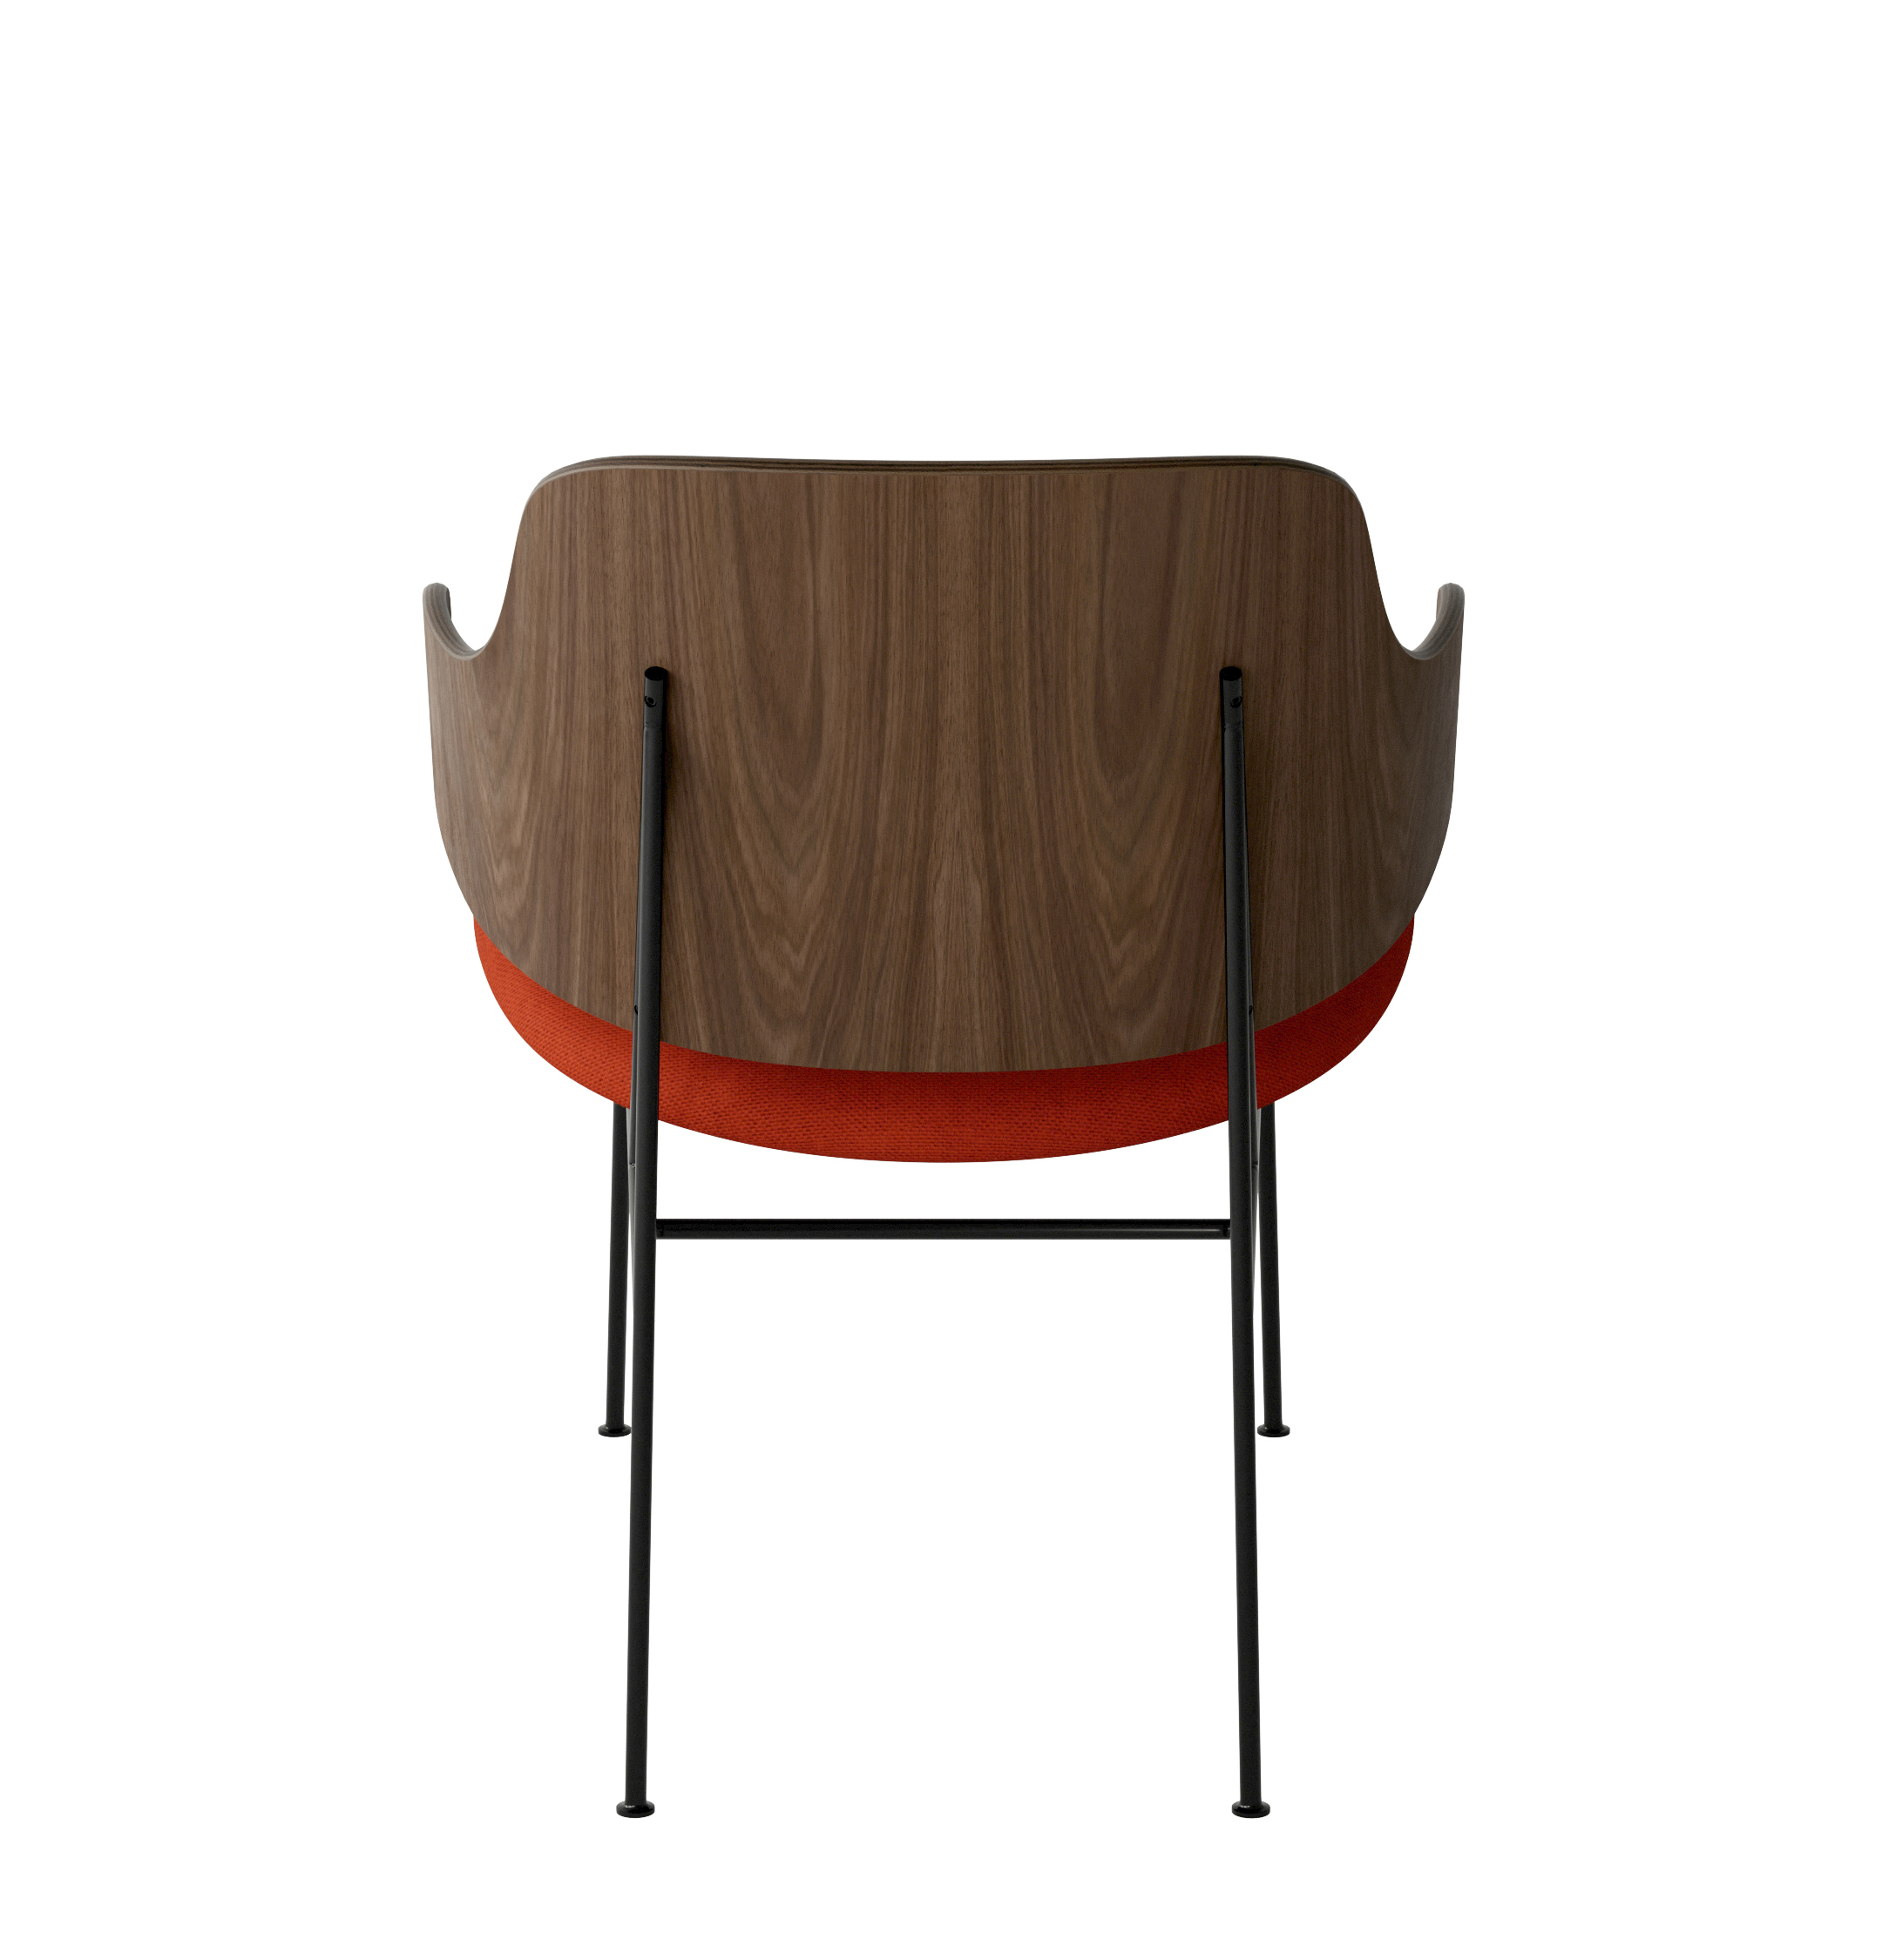 Menu - The Penguin fauteuil, zwart stalen frame, walnoten rugleuning, 0600 (Red)